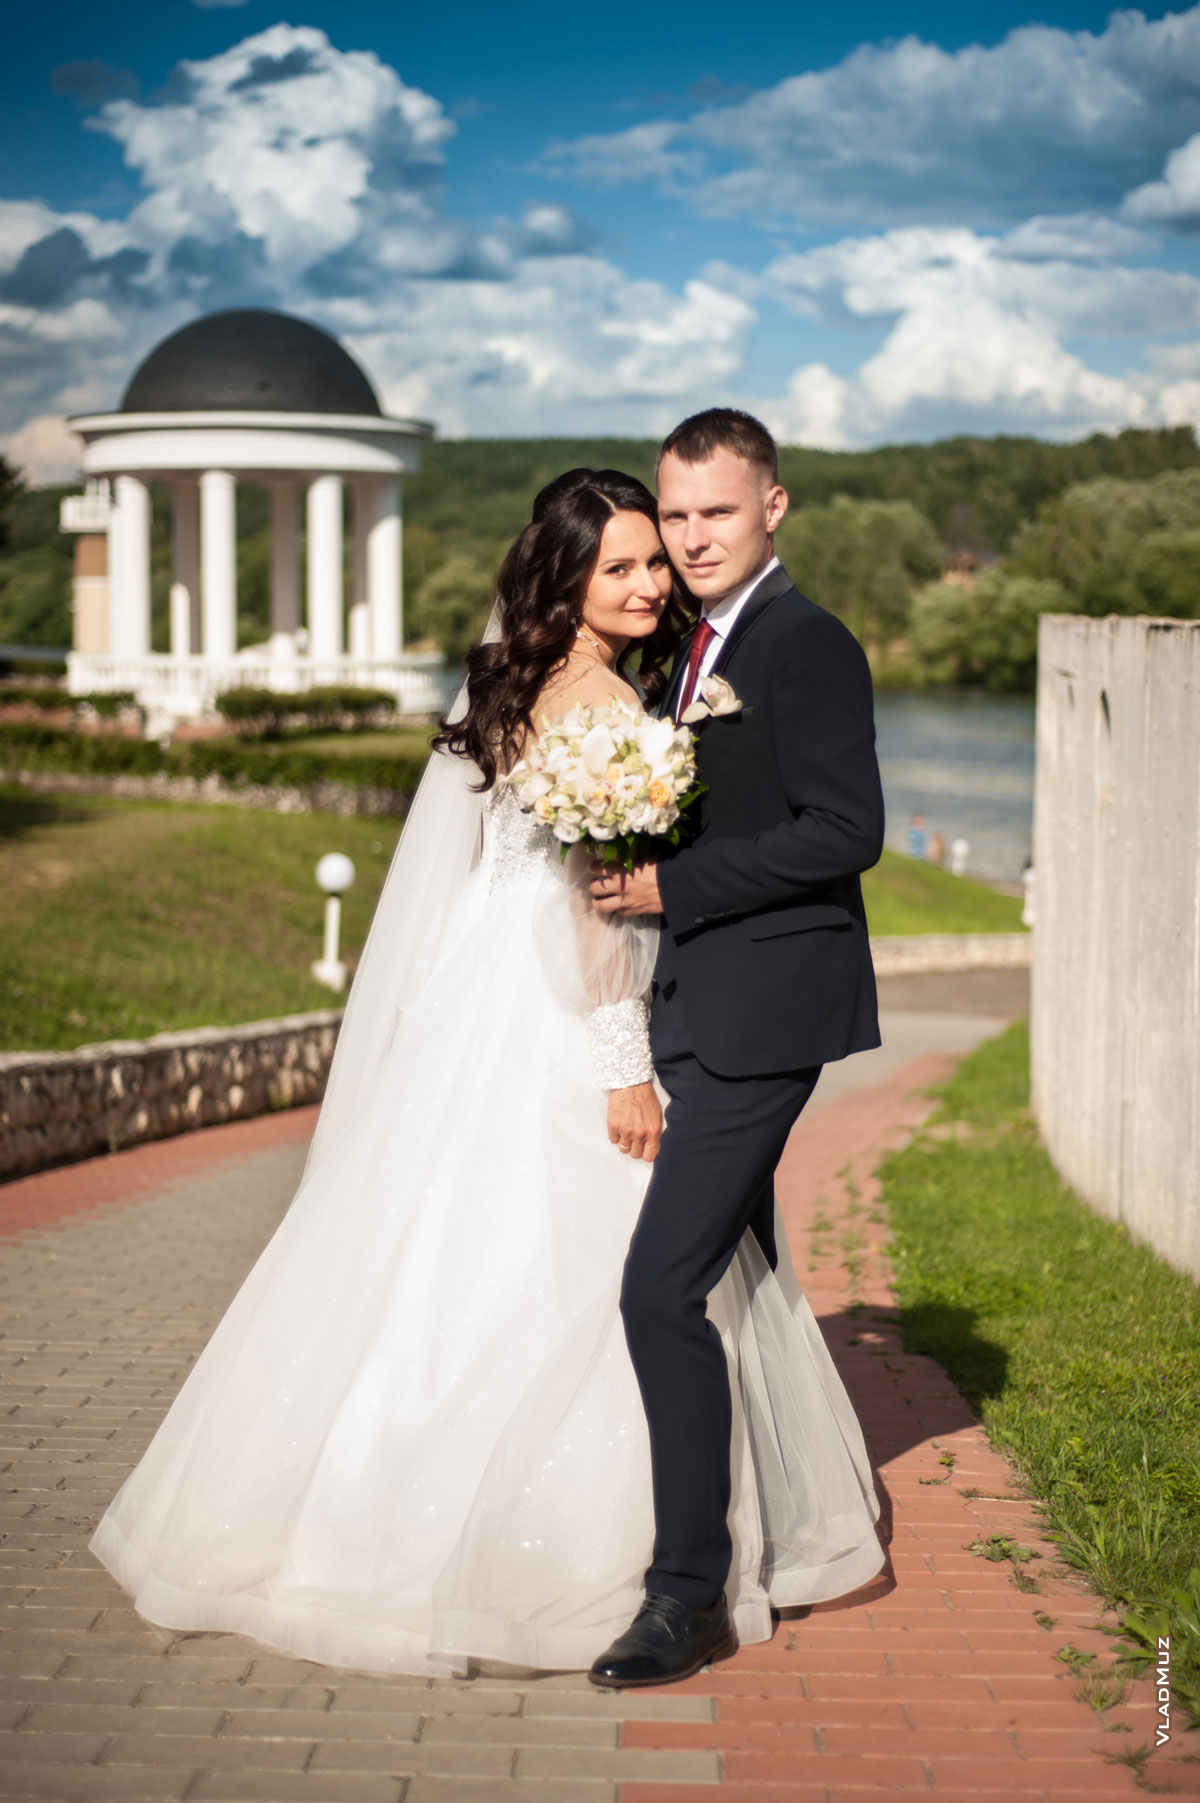 Фото свадебной пары в полный рост на фоне ротонды и синего облачного неба